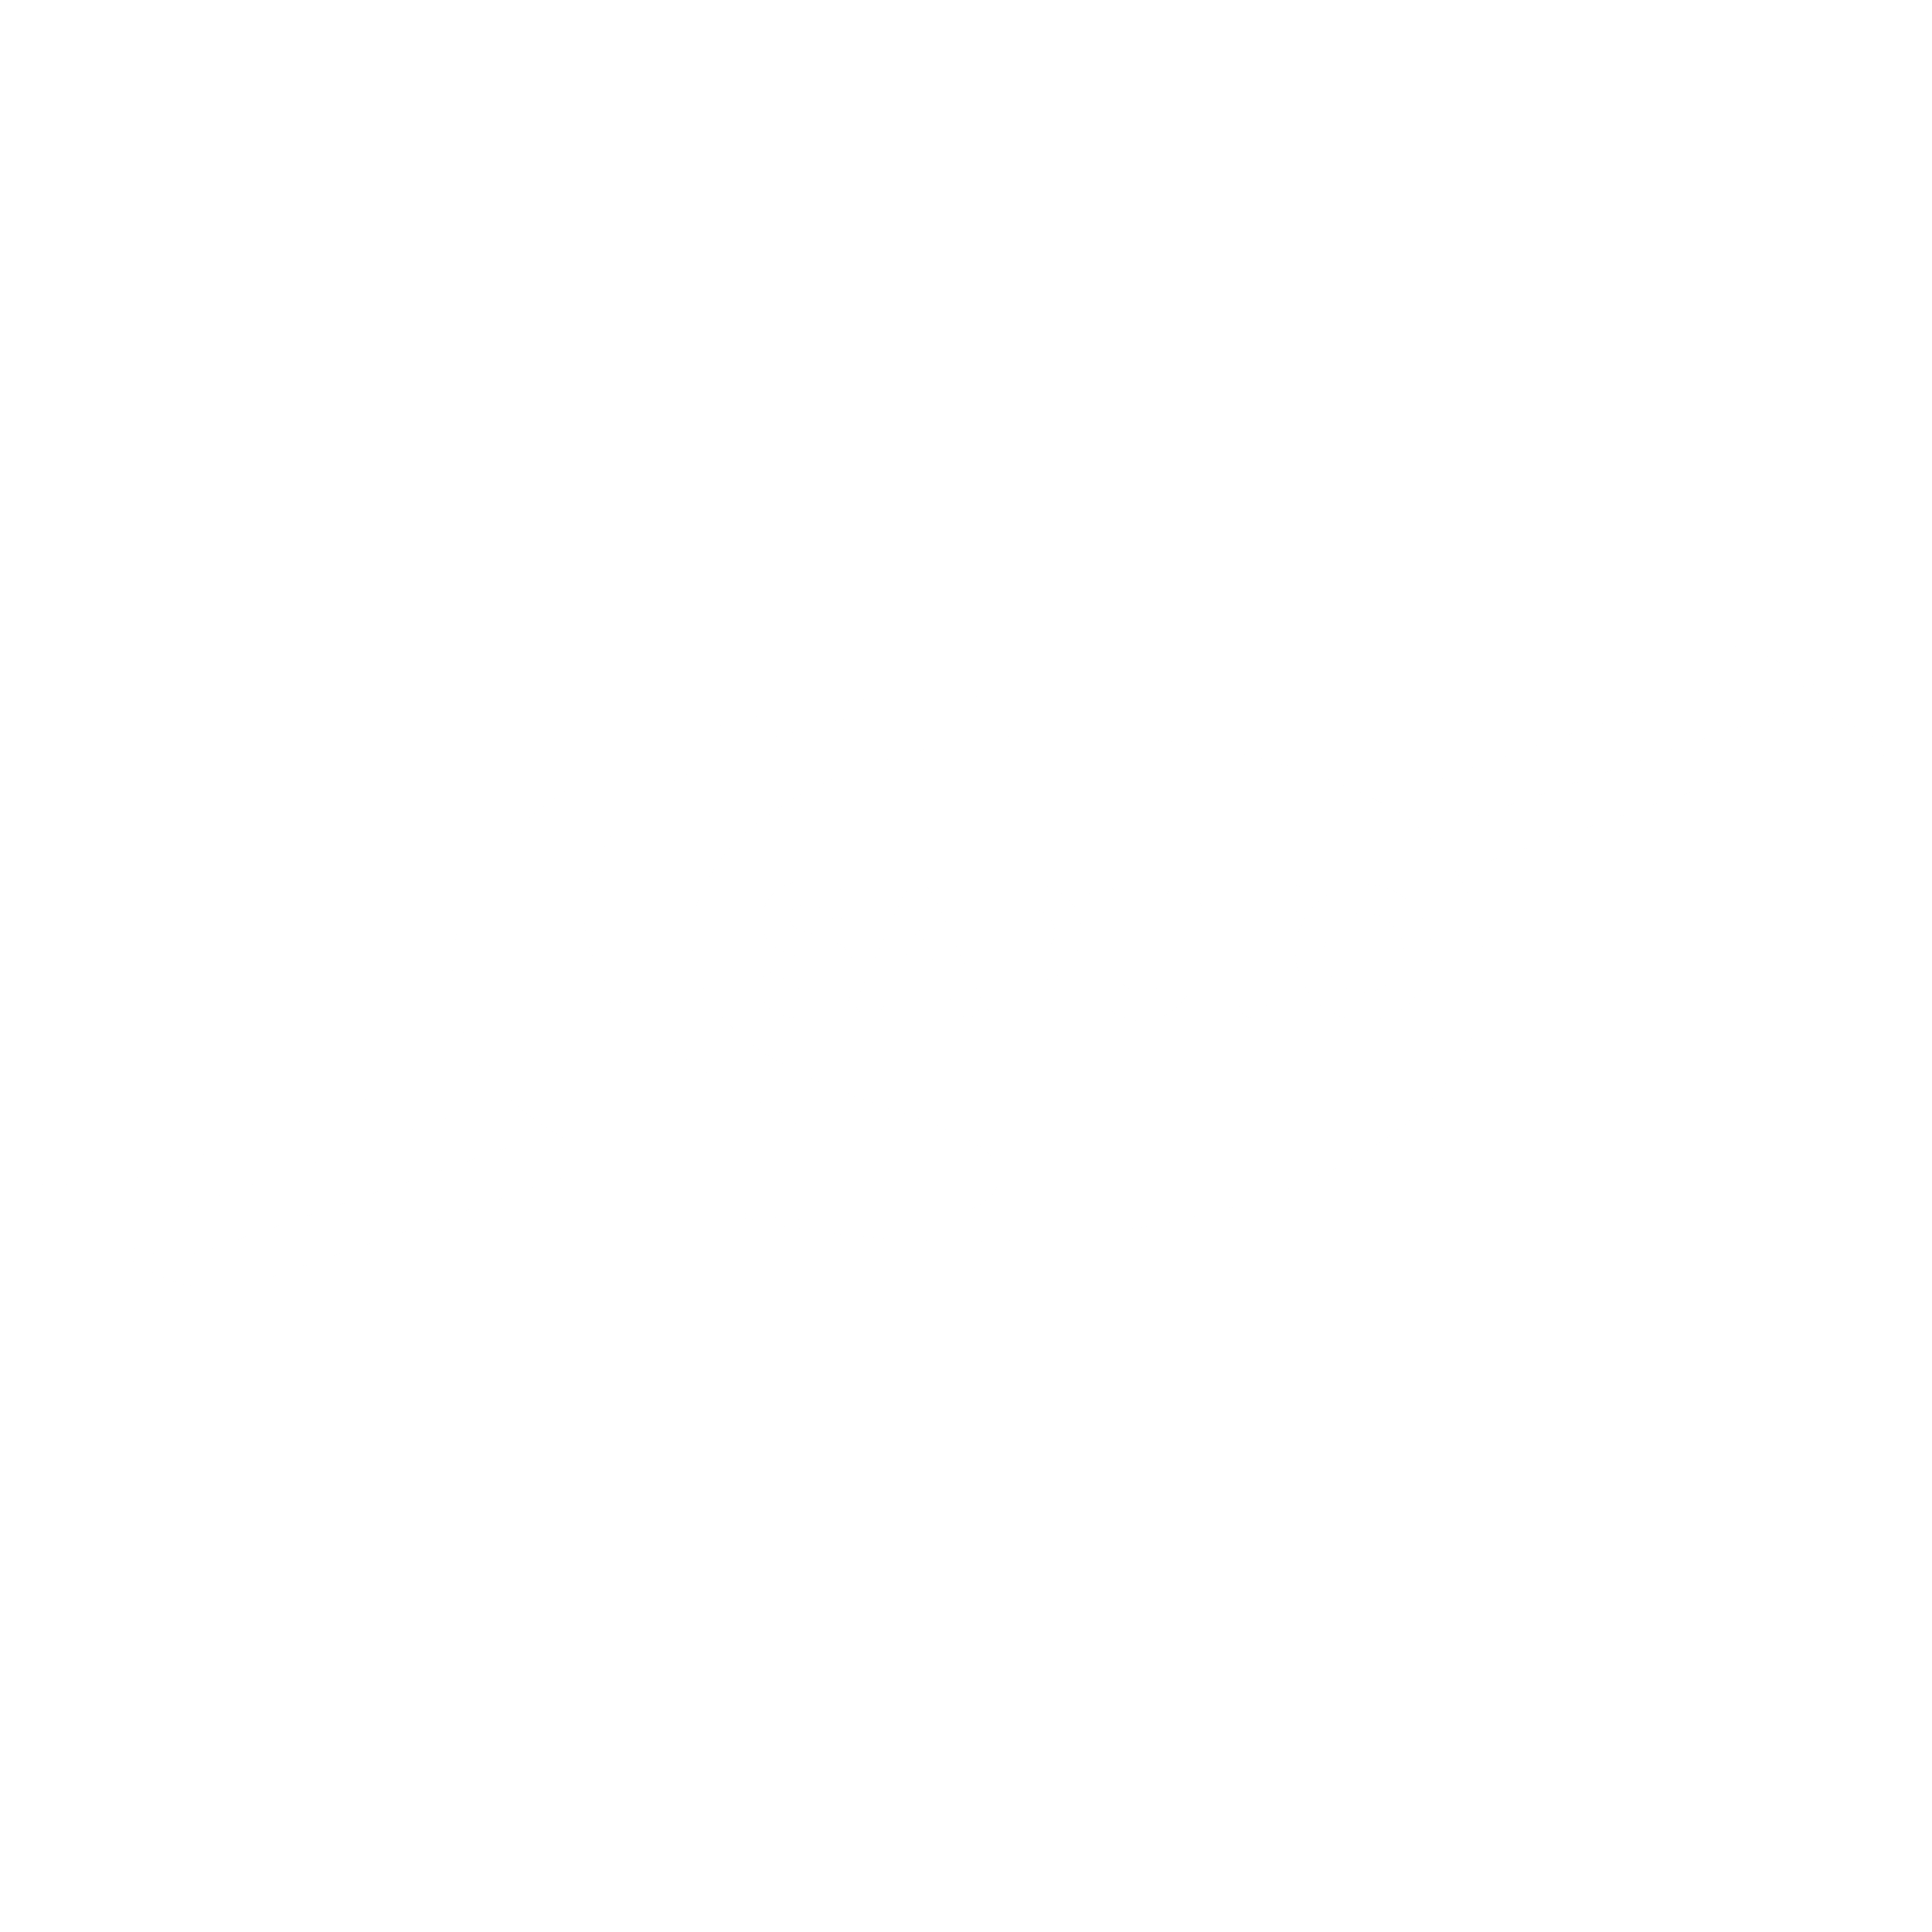 Saputo Logo - Saputo Logo PNG Transparent & SVG Vector - Freebie Supply